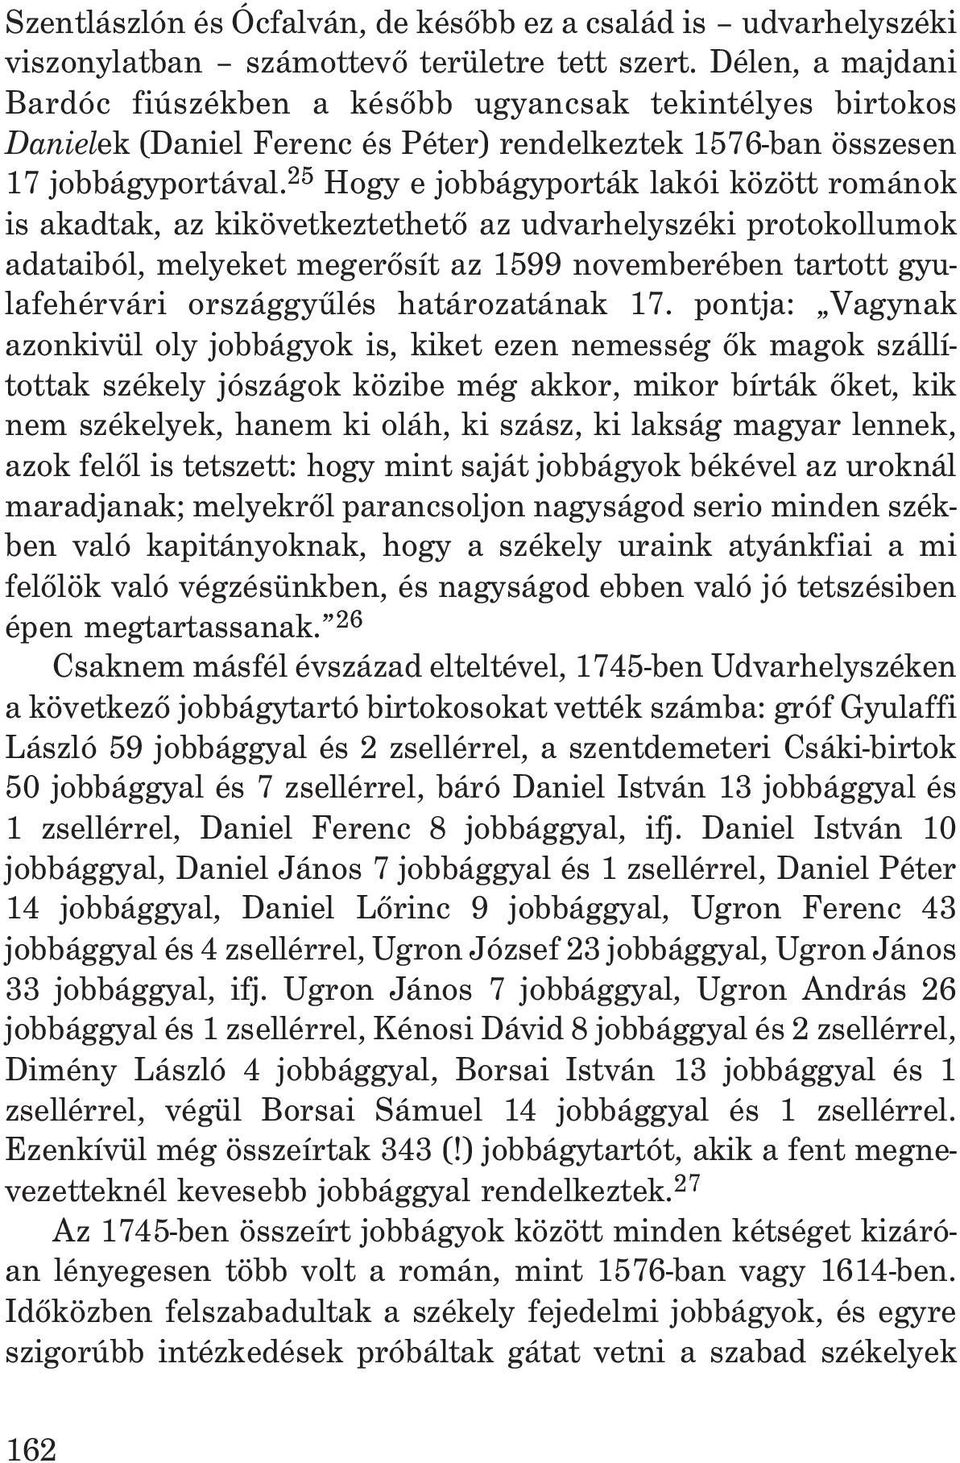 25 Hogy e jobbágyporták lakói között románok is akadtak, az kikövetkeztethetõ az udvarhelyszéki protokollumok adataiból, melyeket megerõsít az 1599 novemberében tartott gyulafehérvári országgyûlés